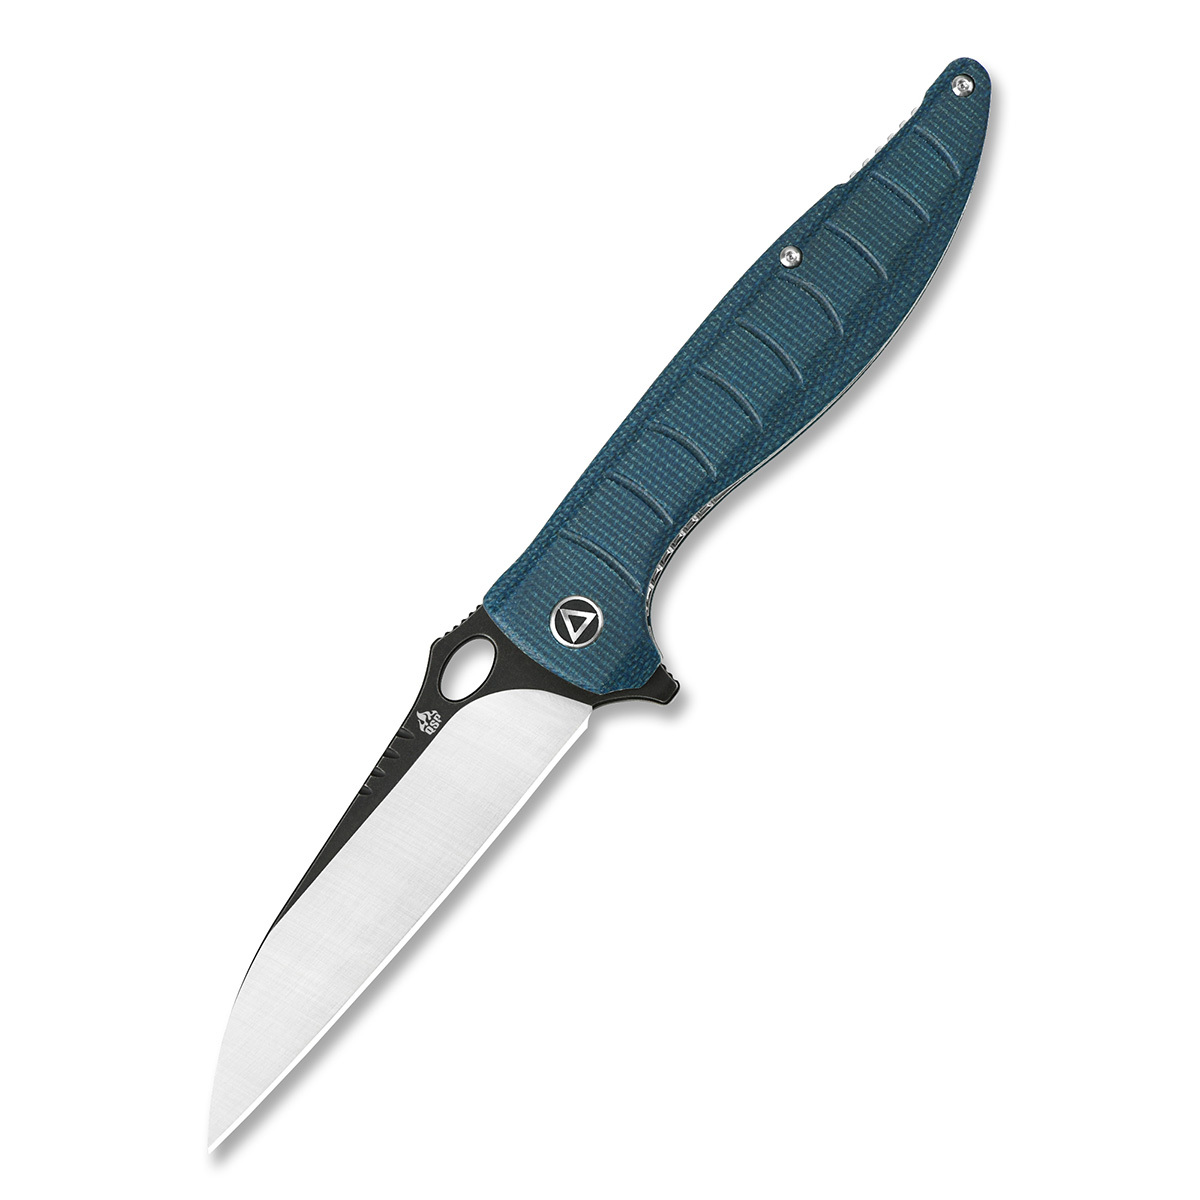 Складной нож QSP Locust, сталь 154CM, рукоять микарта, синий, Бренды, QSP